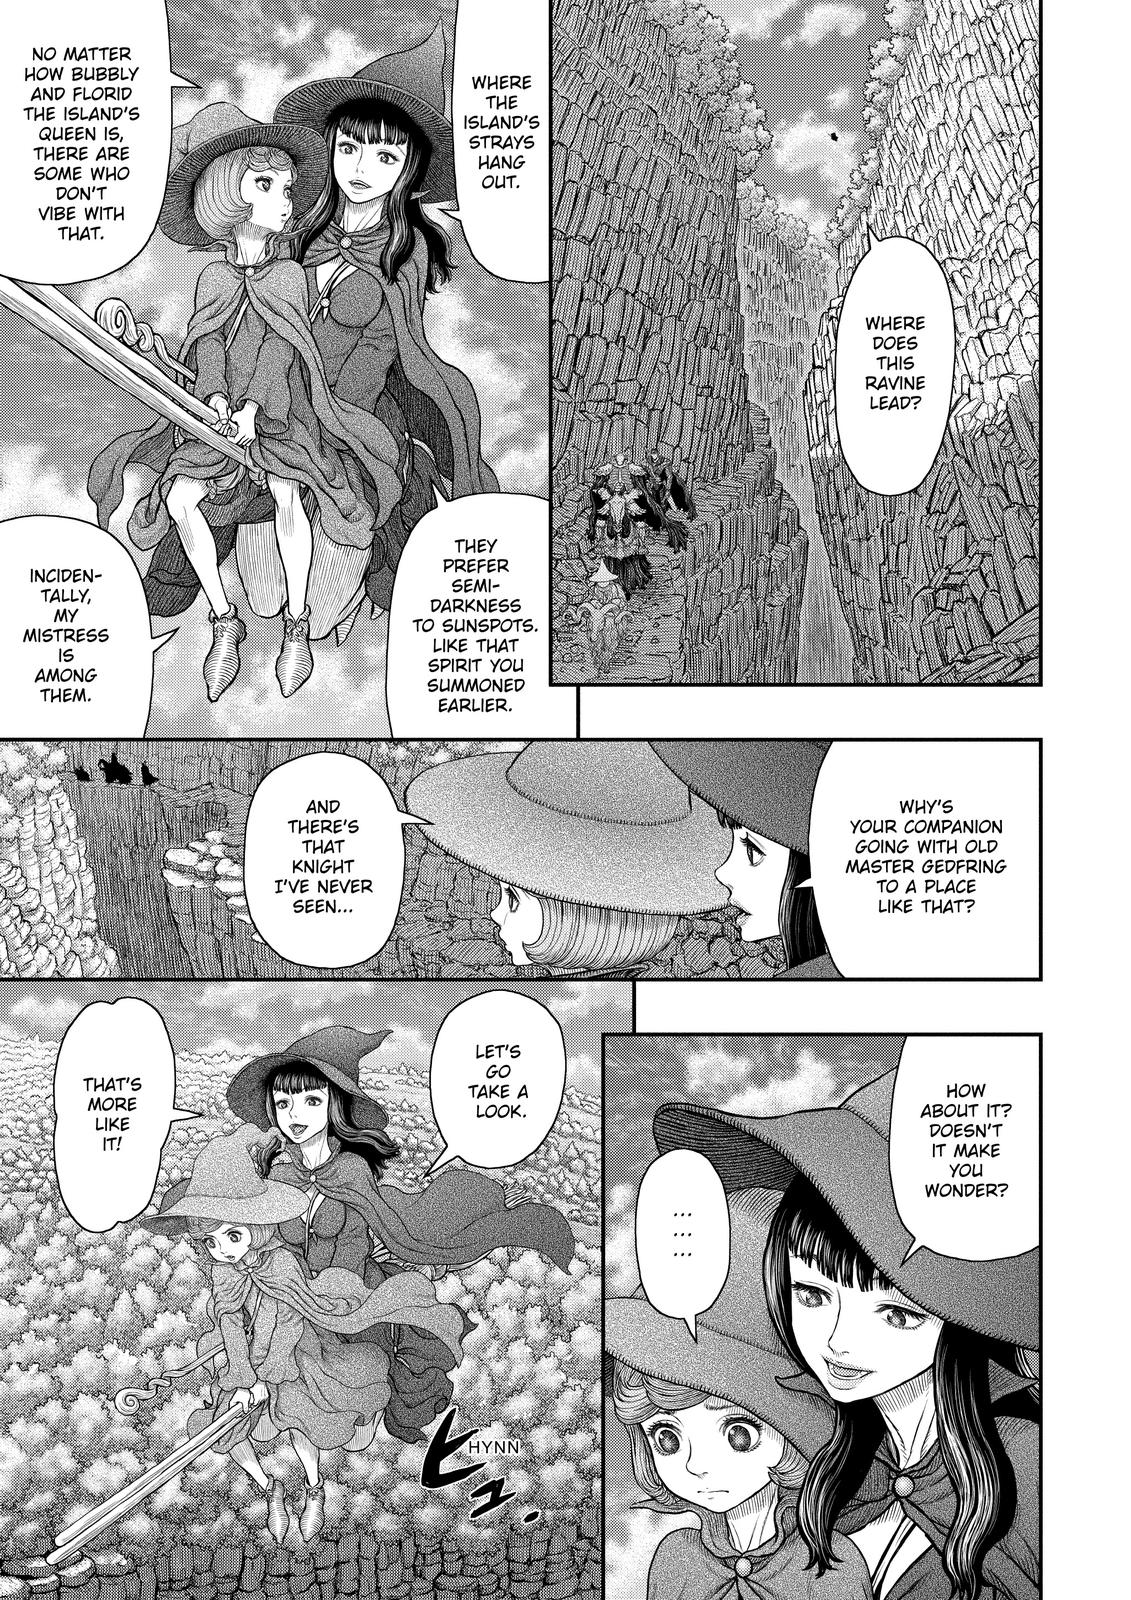 Berserk Manga Chapter 361 image 10